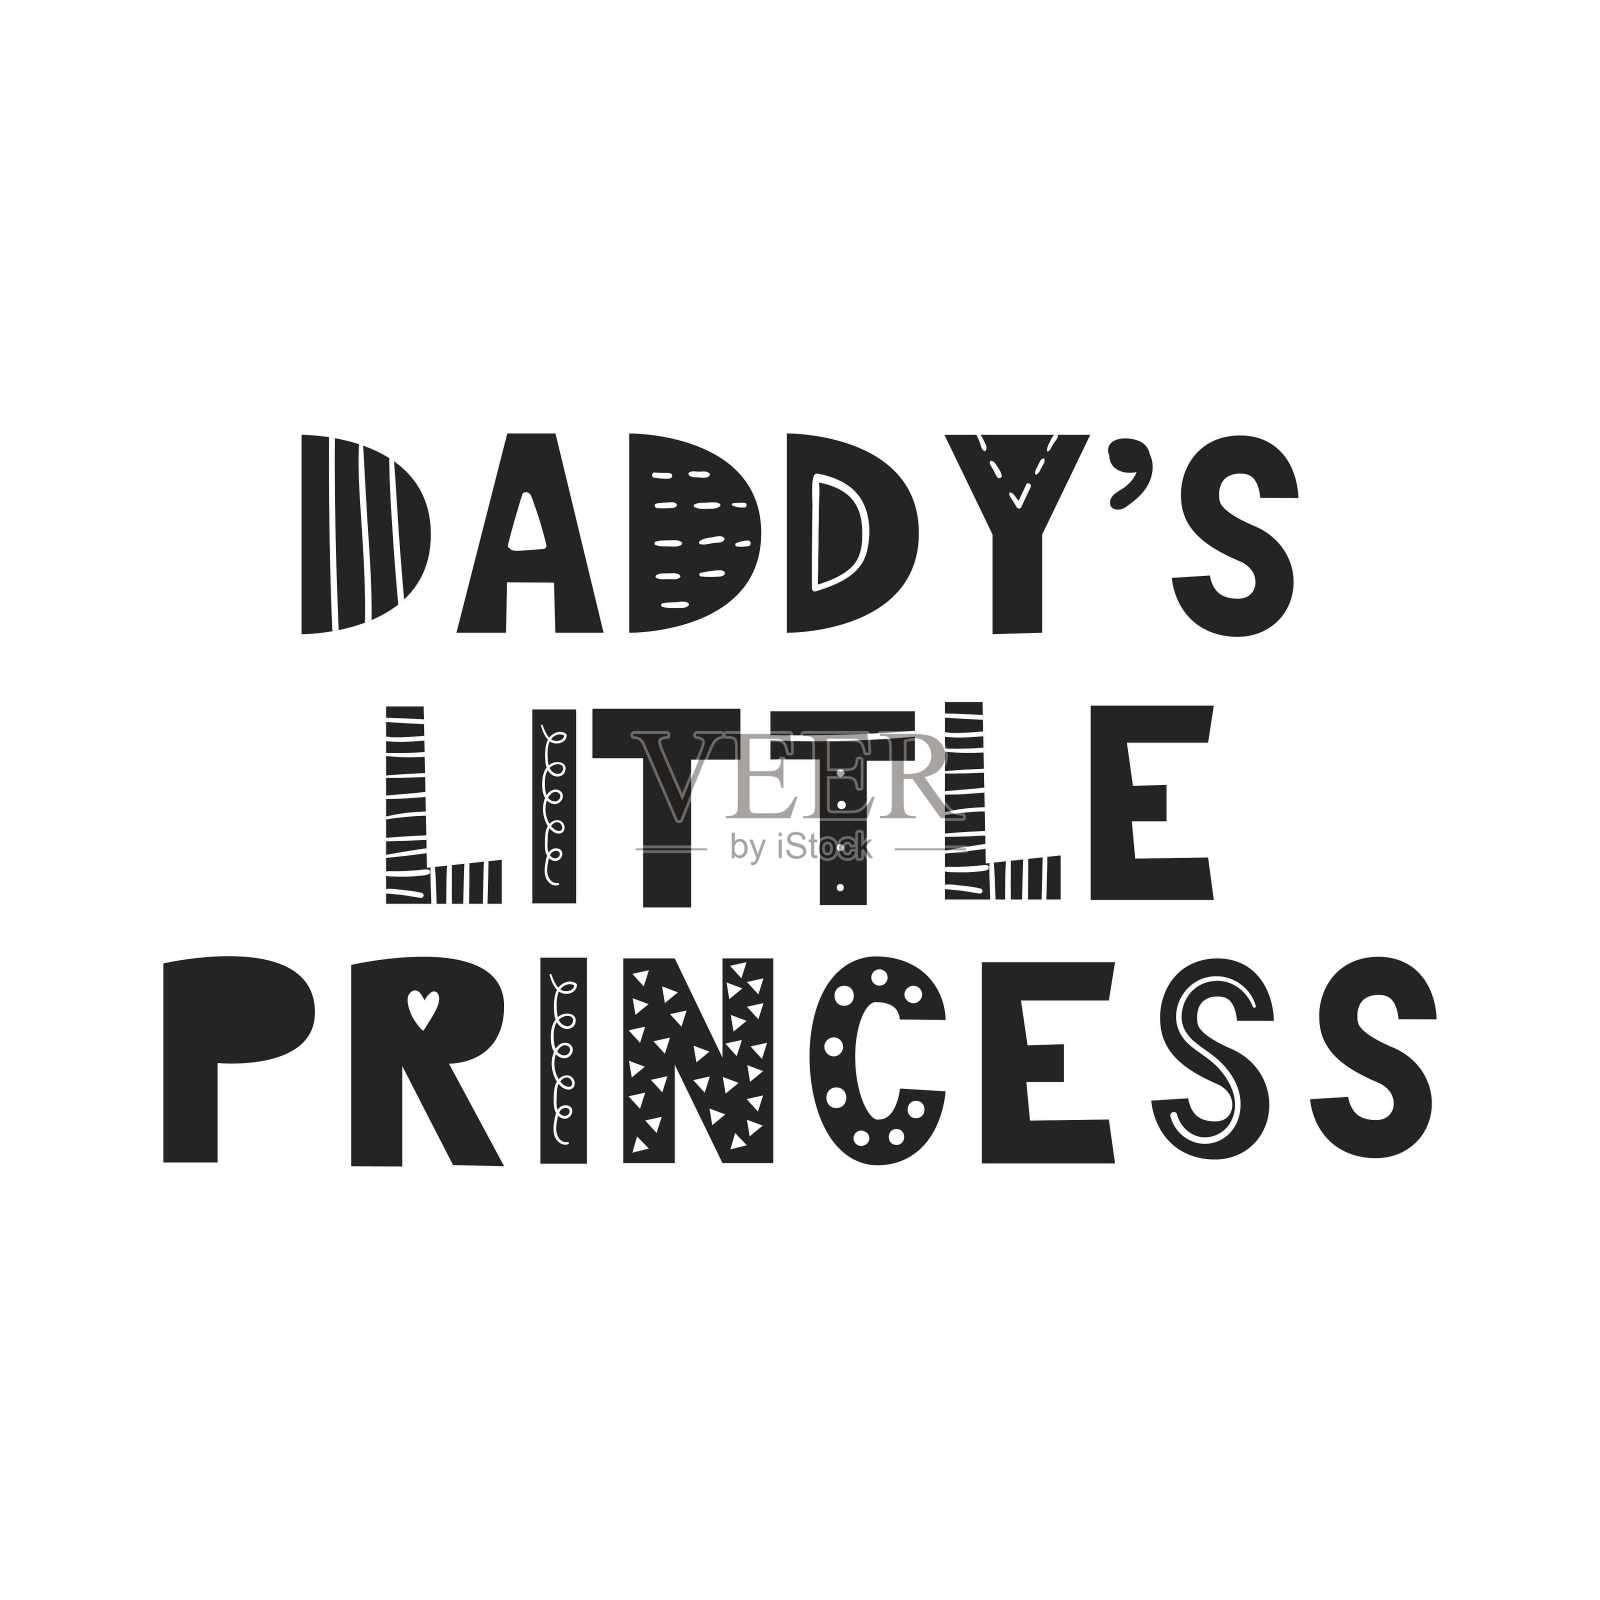 爸爸的小公主-可爱的手绘有趣的幼儿园海报与手绘字母在斯堪的纳维亚风格。插画图片素材